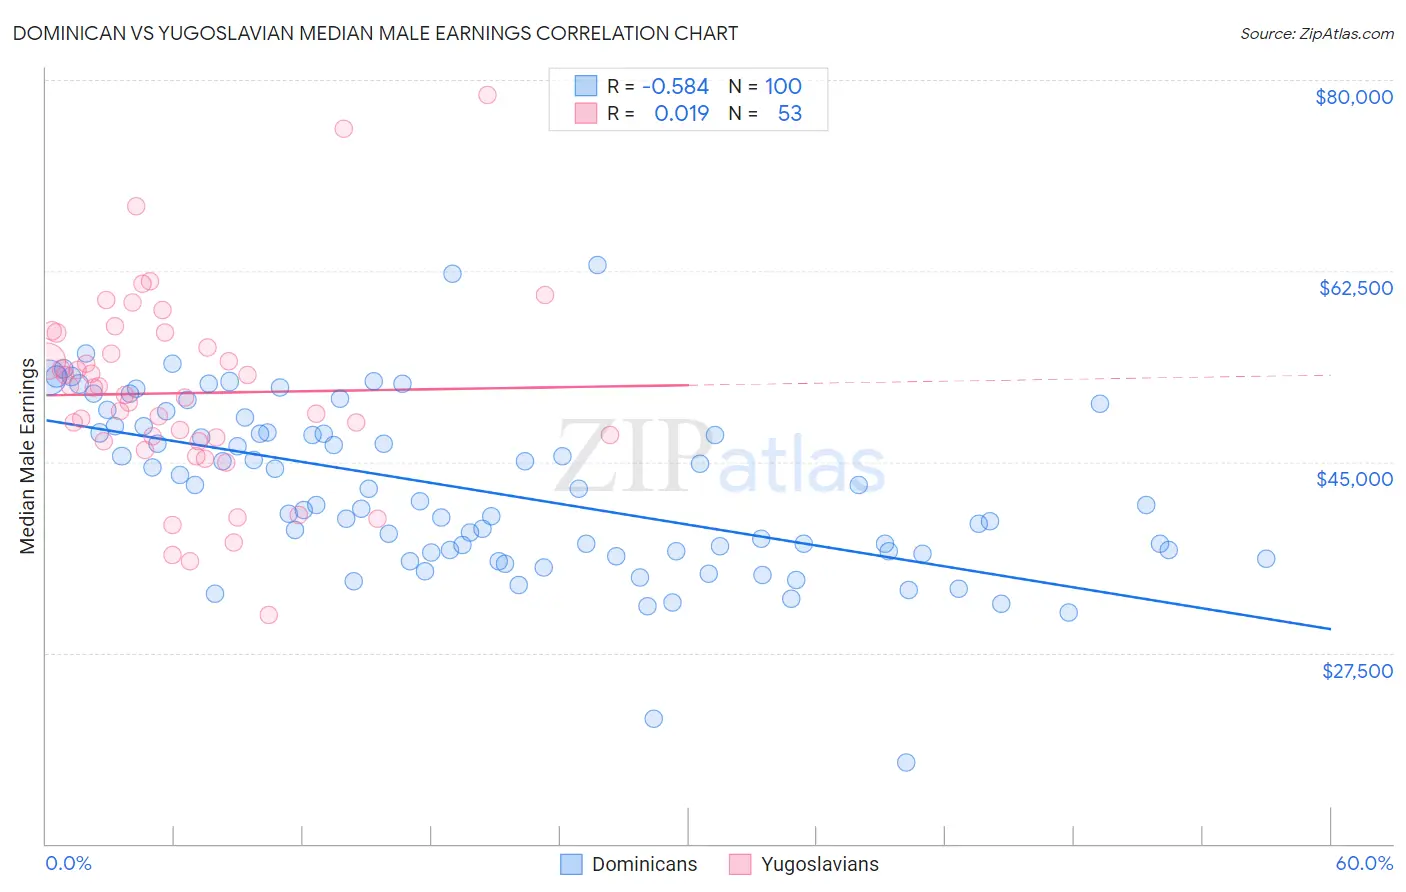 Dominican vs Yugoslavian Median Male Earnings